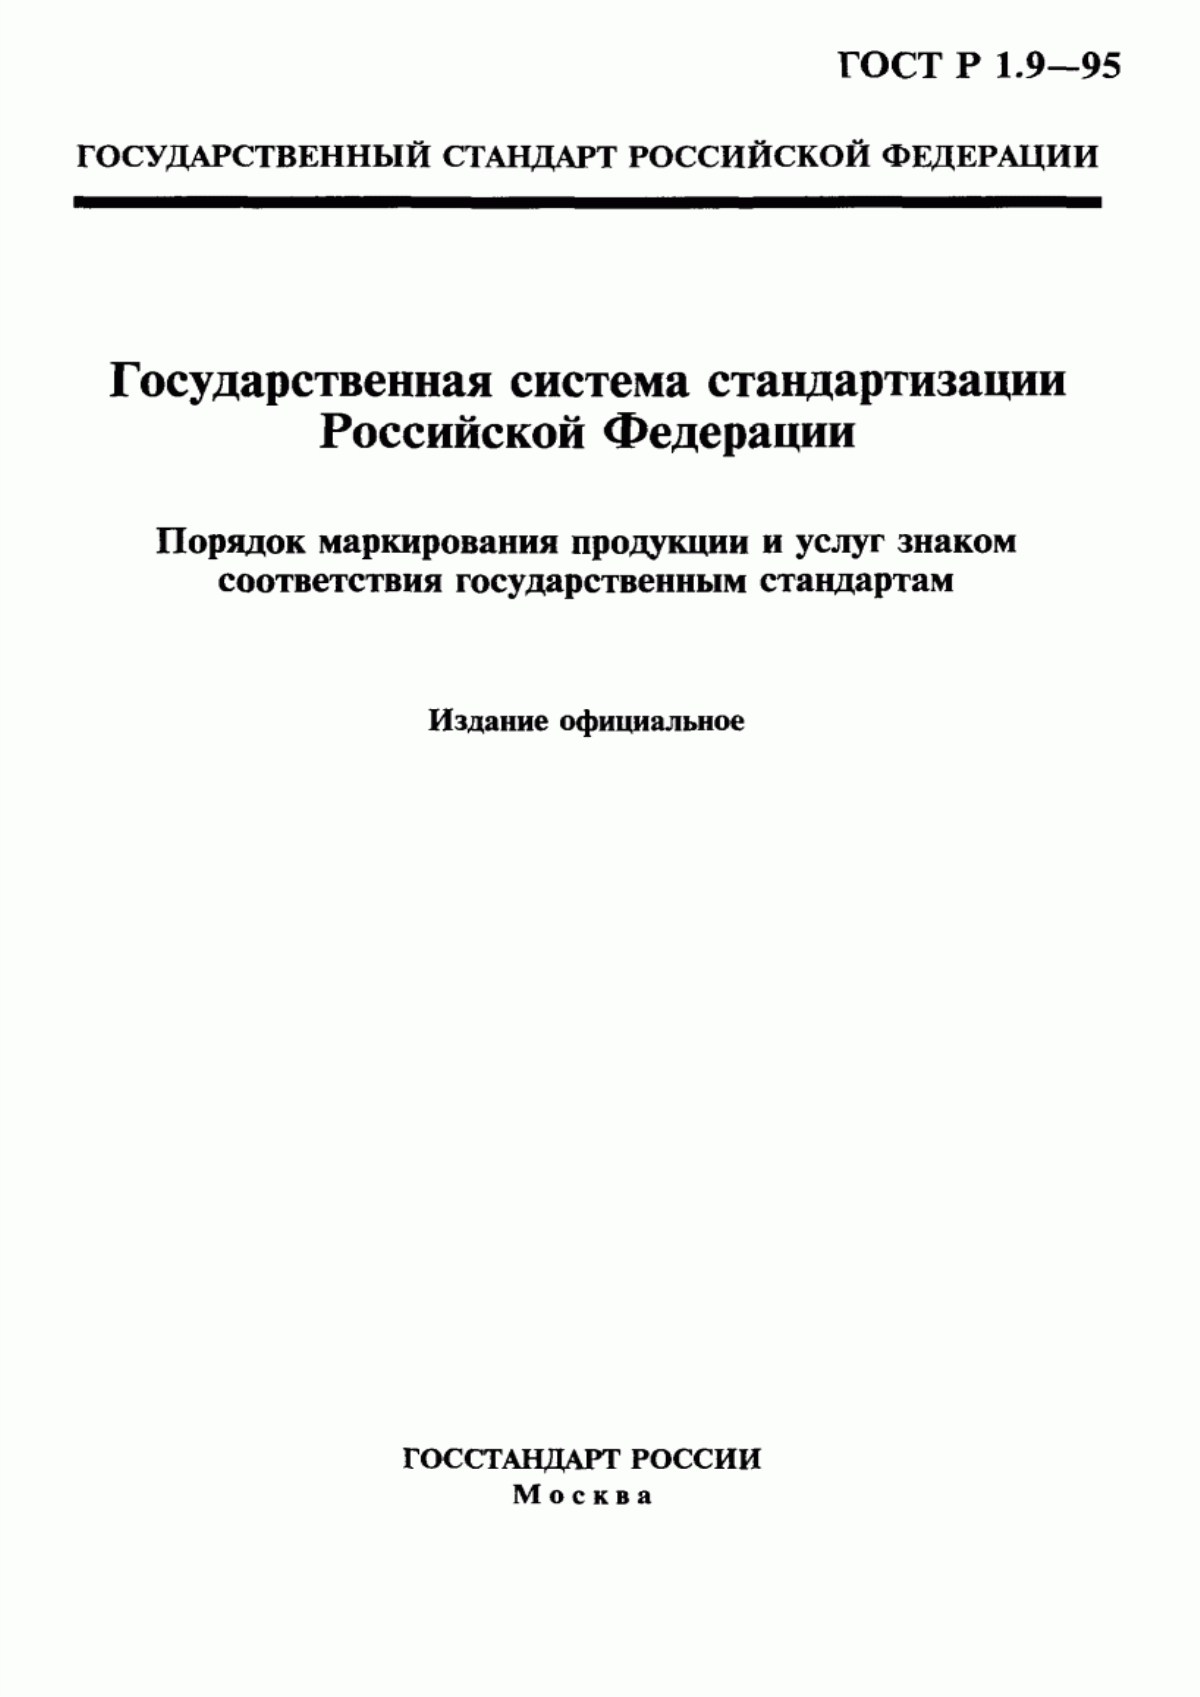 ГОСТ Р 1.9-95 Государственная система стандартизации Российской Федерации. Порядок маркирования продукции и услуг знаком соответствия государственным стандартам